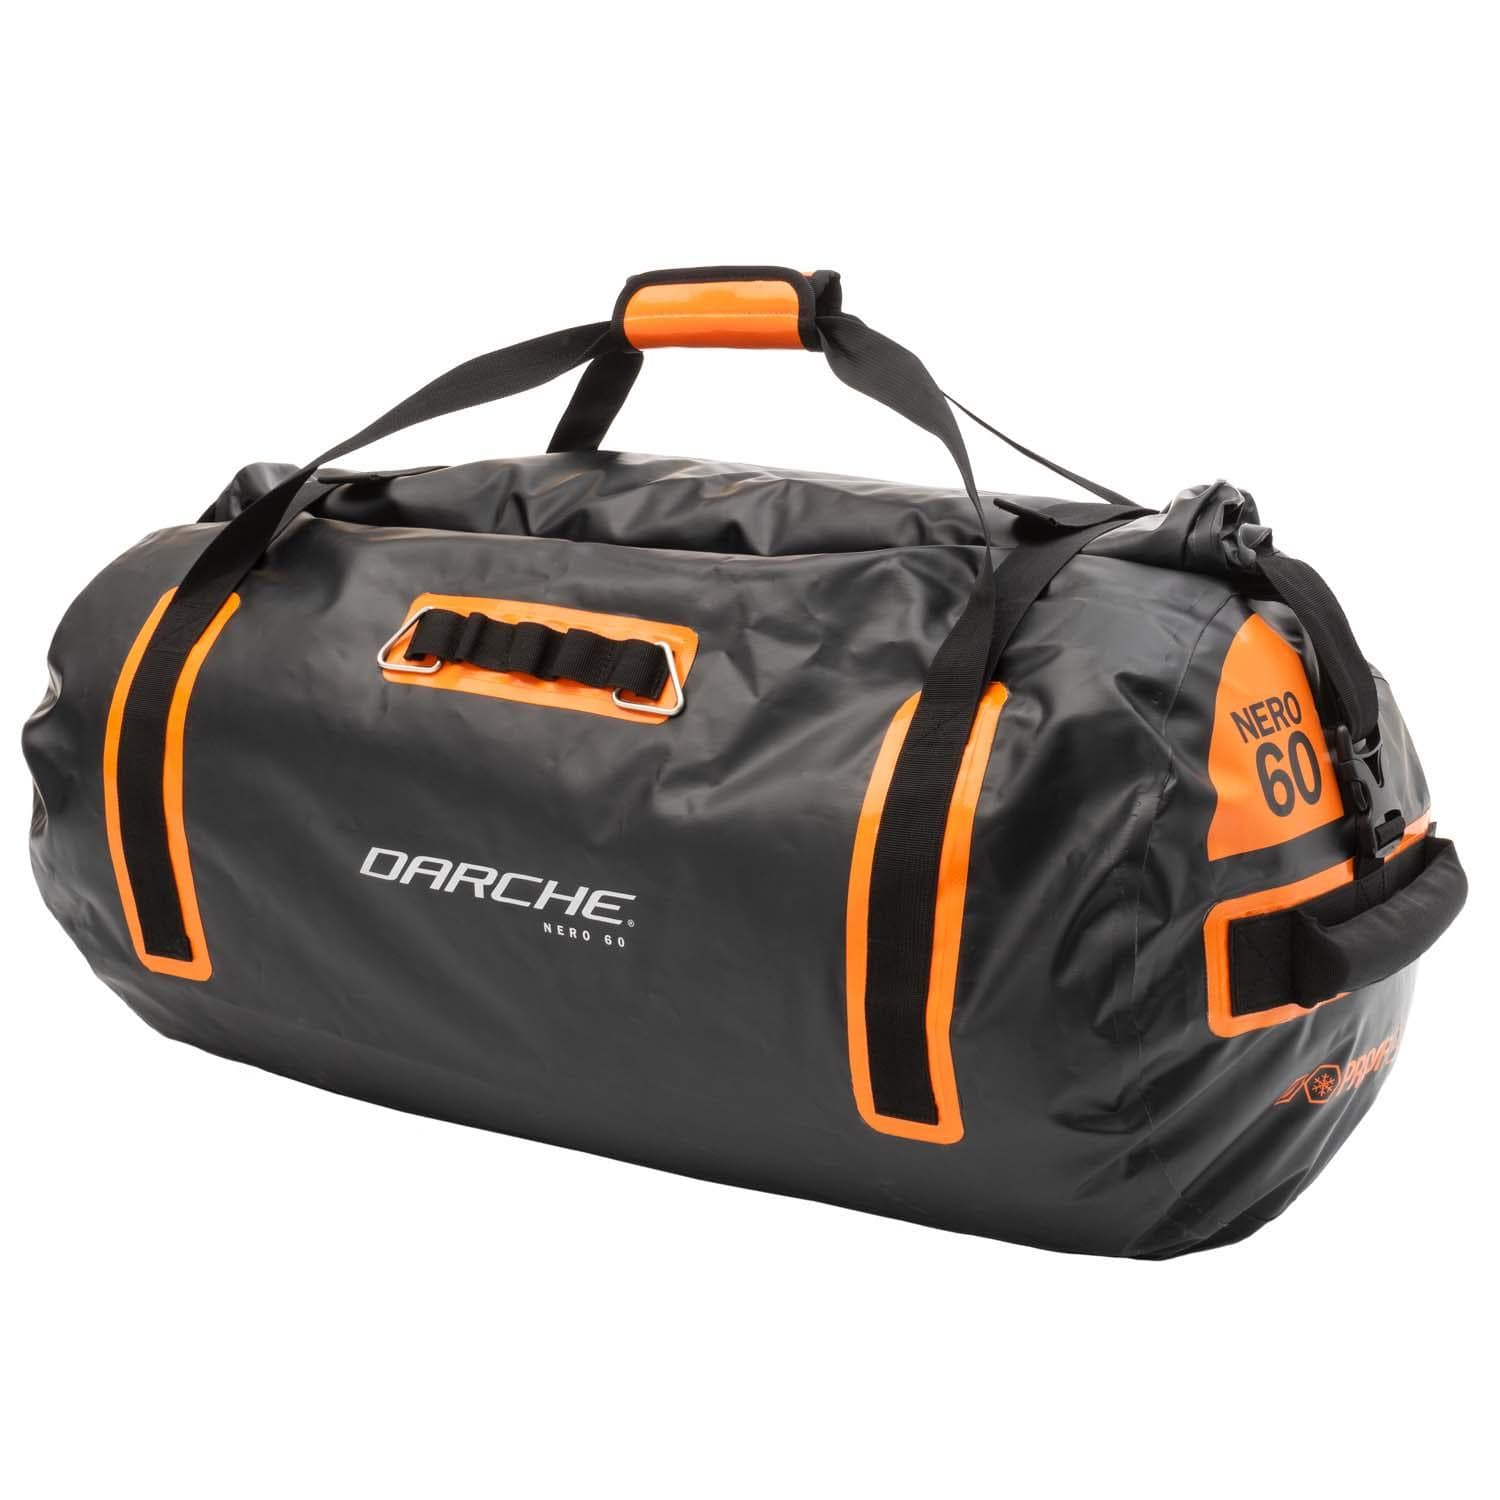 Nero Bags NERO BAGS 60 Boxes & Bags Darche- Adventure Imports